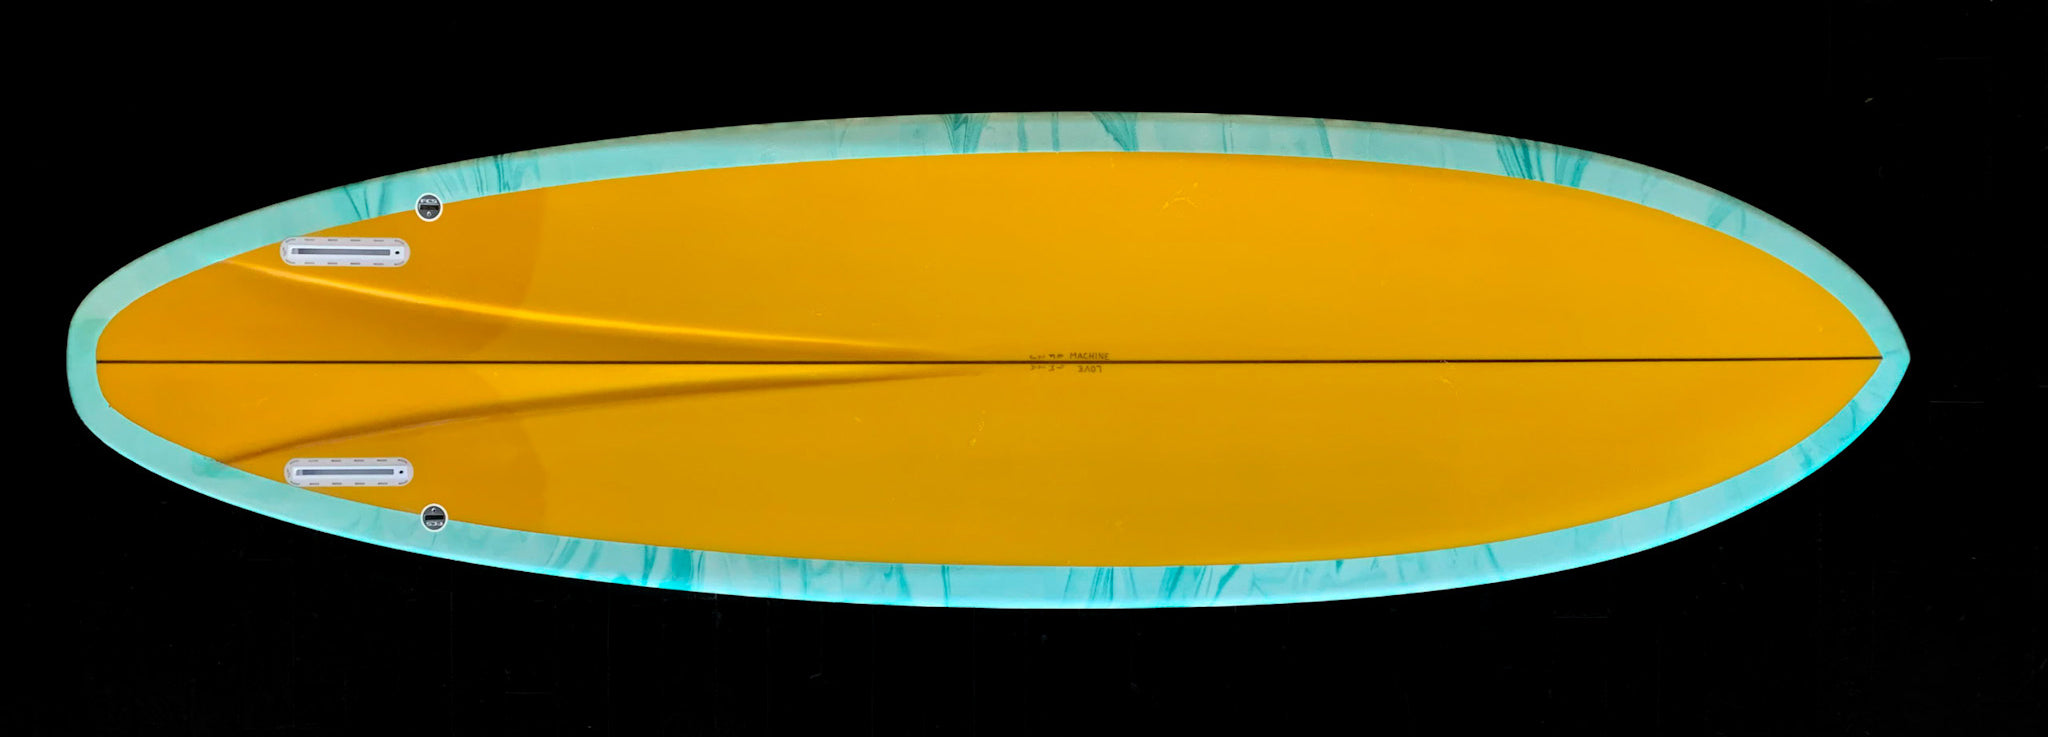 FM – LOVEMACHINE SURFBOARDS